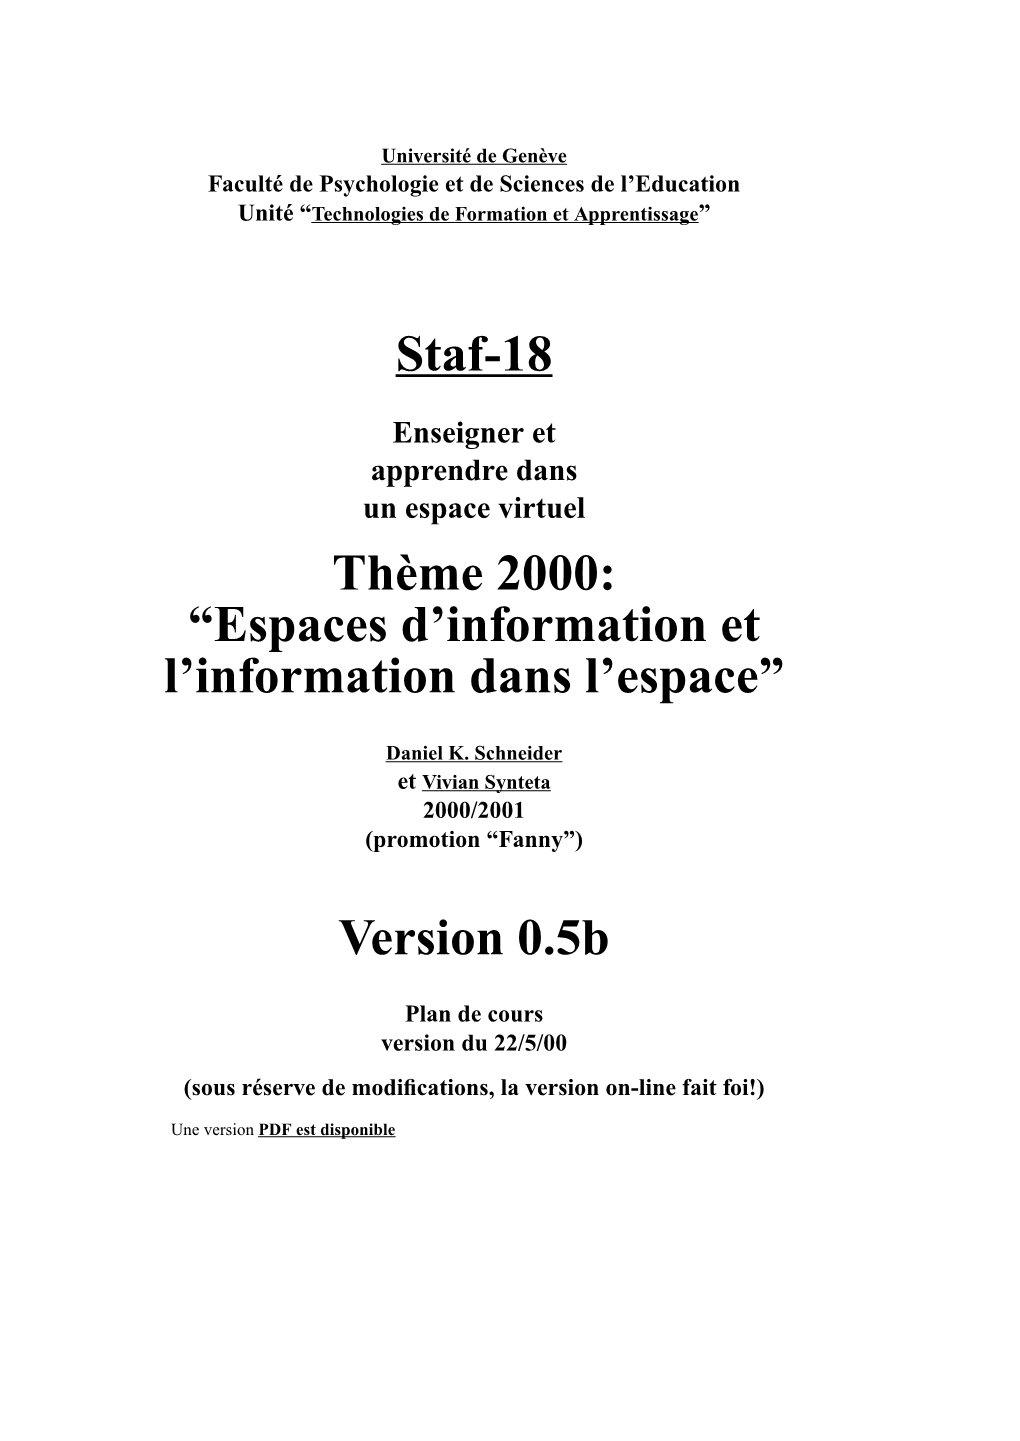 Staf-18 Thème 2000: “Espaces D'information Et L